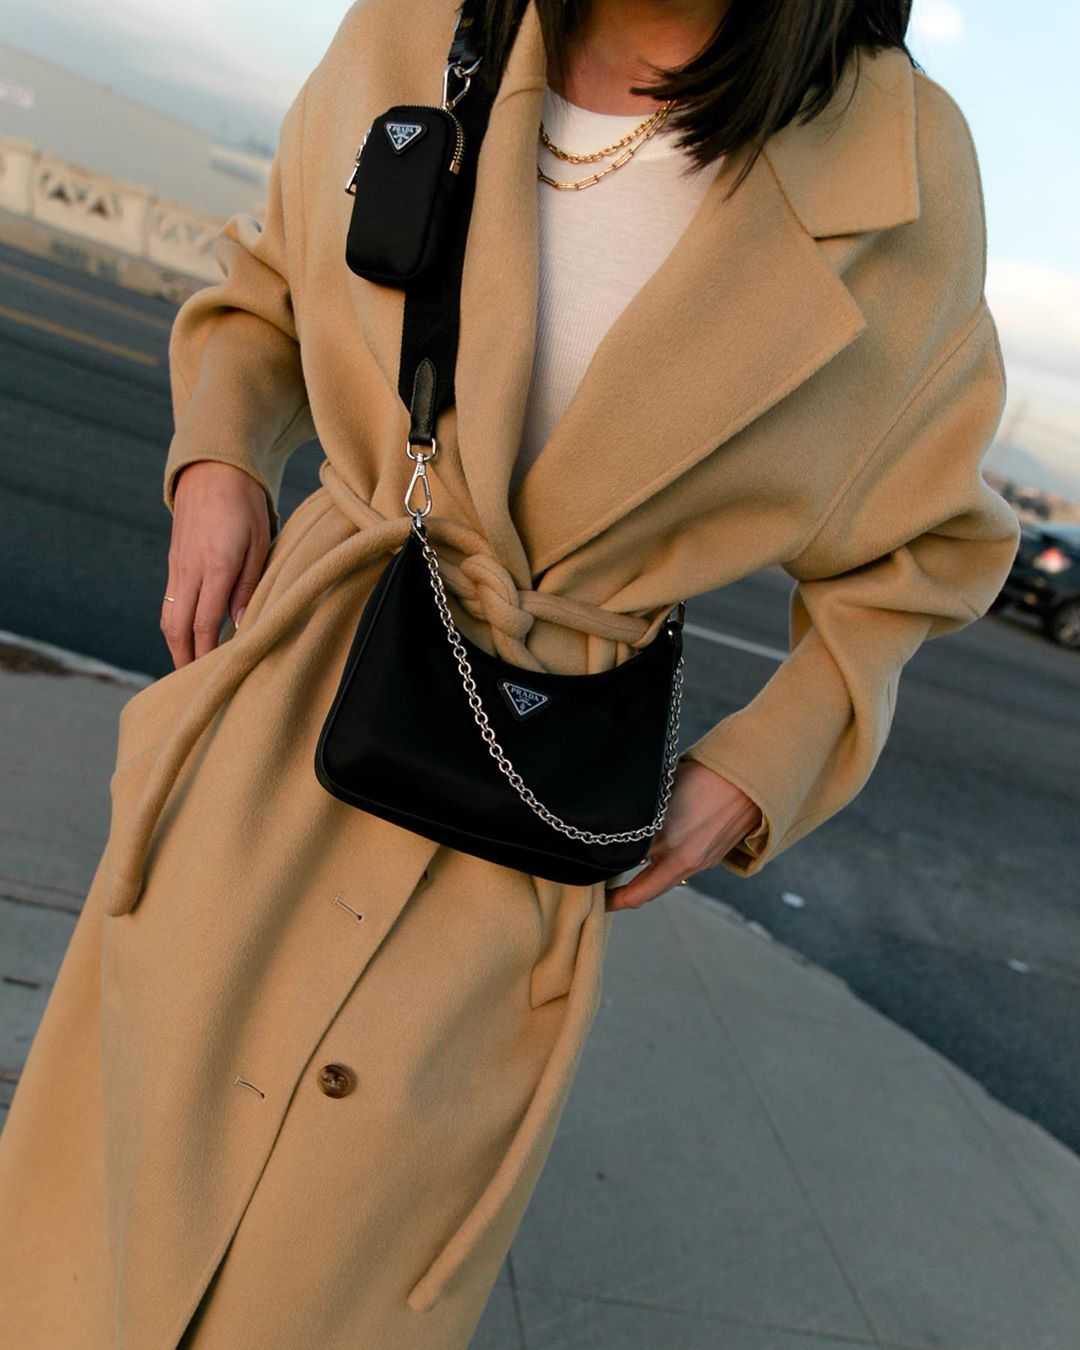 Самые трендовые модели женских пальто осеньзима  Пальто пиджаки фасона оверсайз с мужского плеча, яркие пальто желтозеленых оттенков, пальтохалат, длинные пальто с поясом и другие